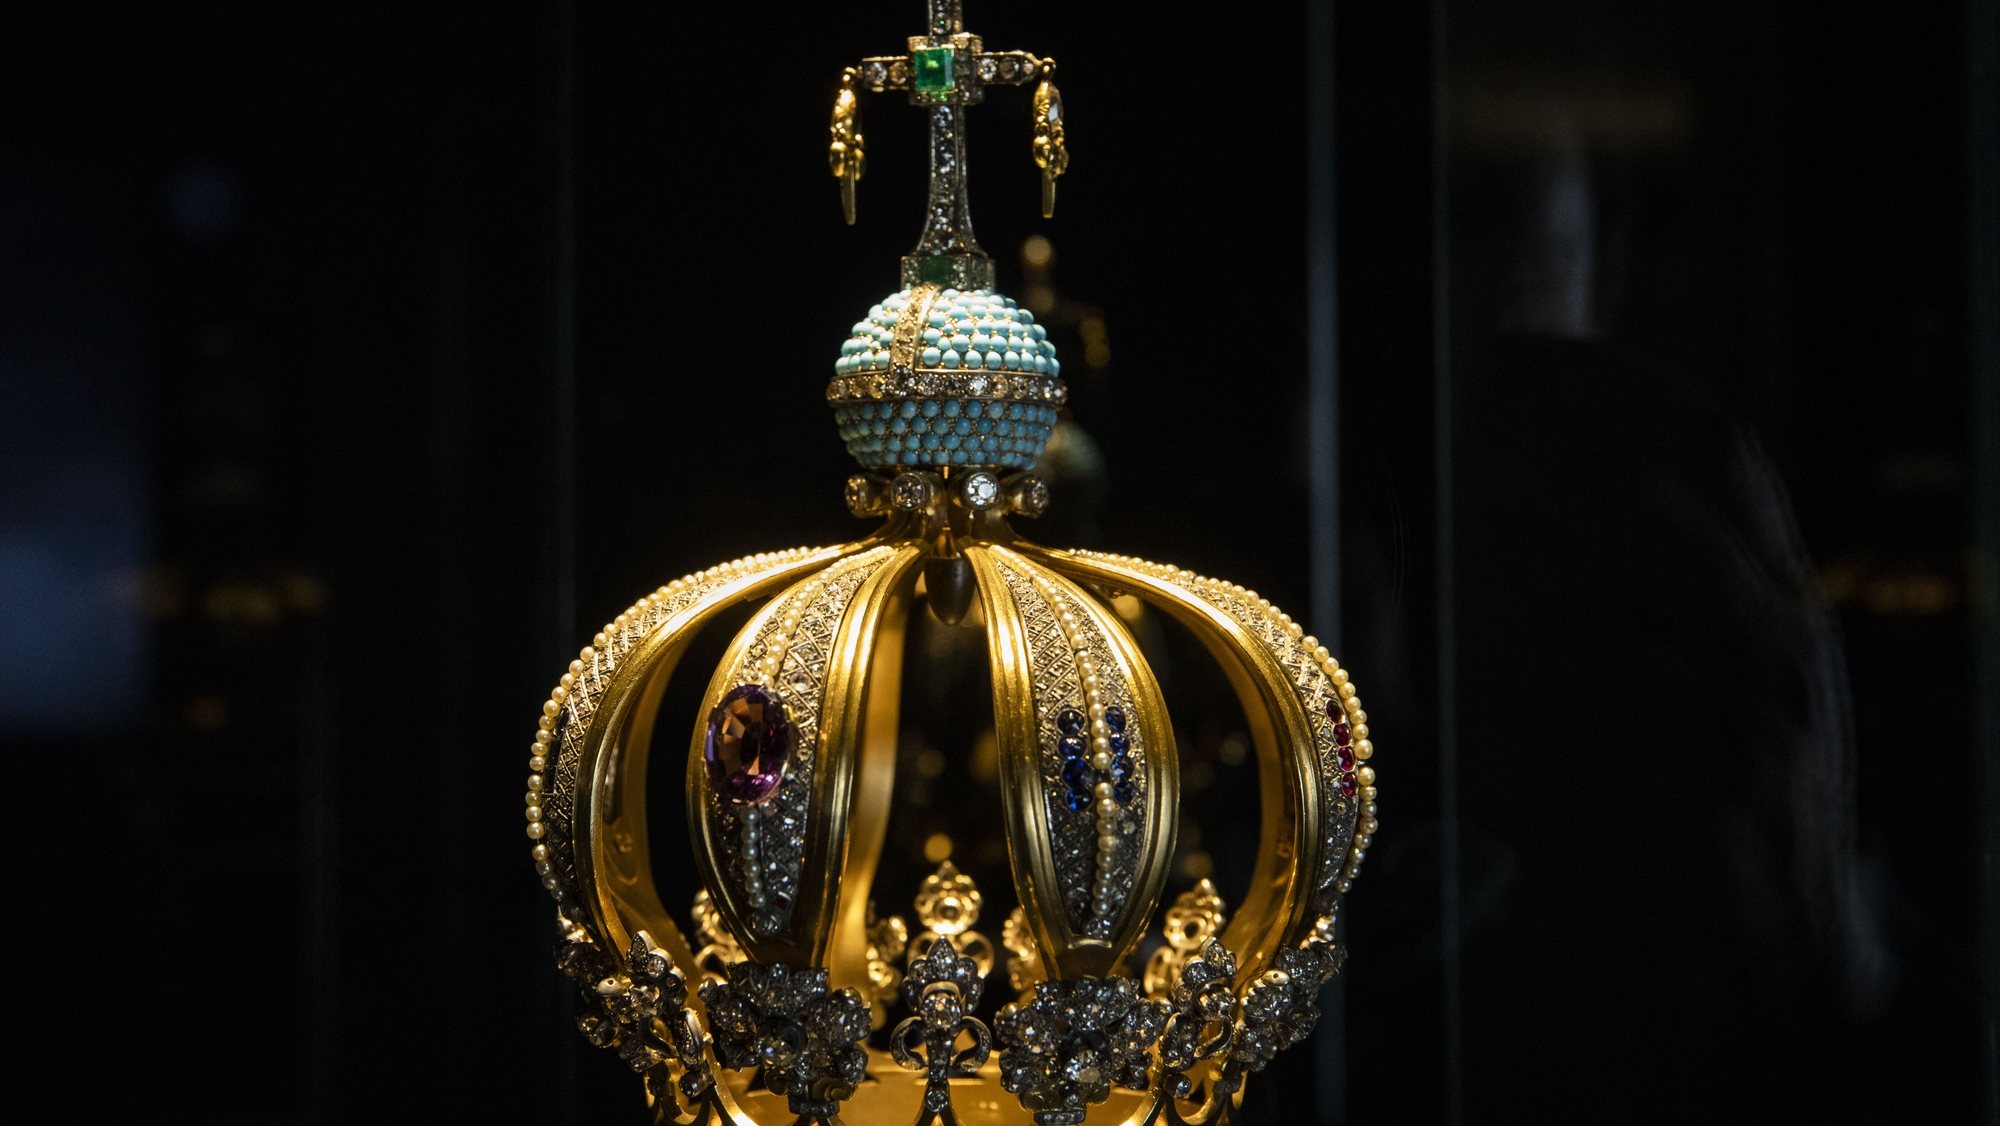 A coroa de Nossa Senhora de Fátima estará exposta no congresso dos 375 anos da Coroação de Nossa Senhora da Conceição como Padroeira de Portugal, Fátima, 3 de março de 2022. PAULO CUNHA/LUSA